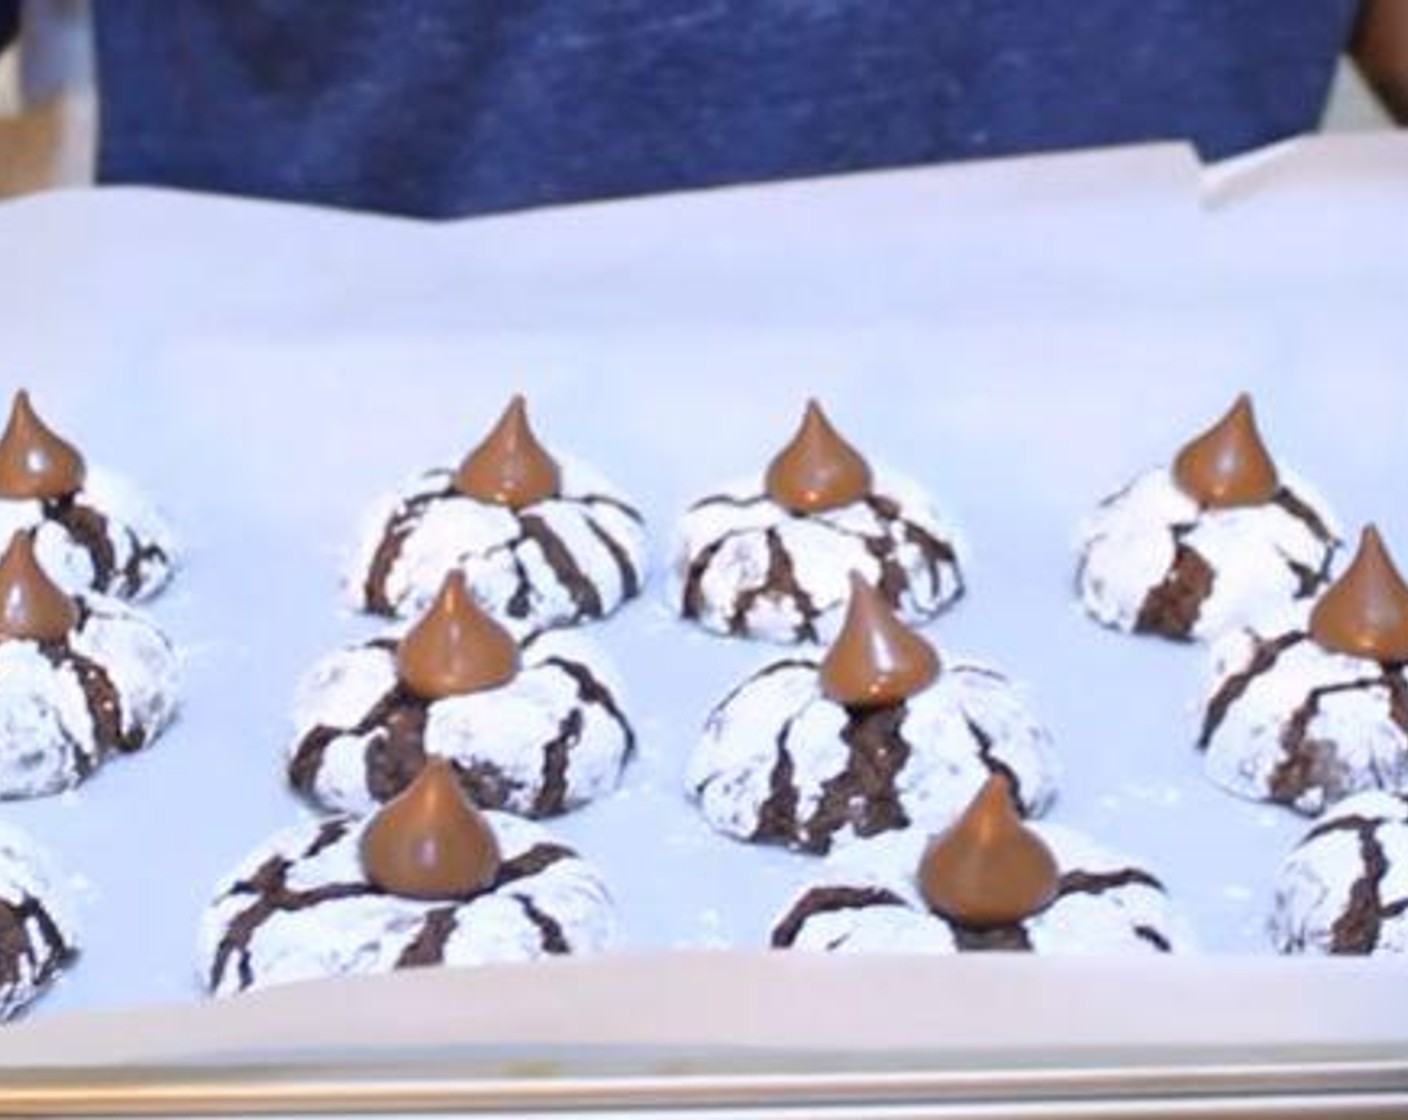 Chocolate Crinkles Cookies